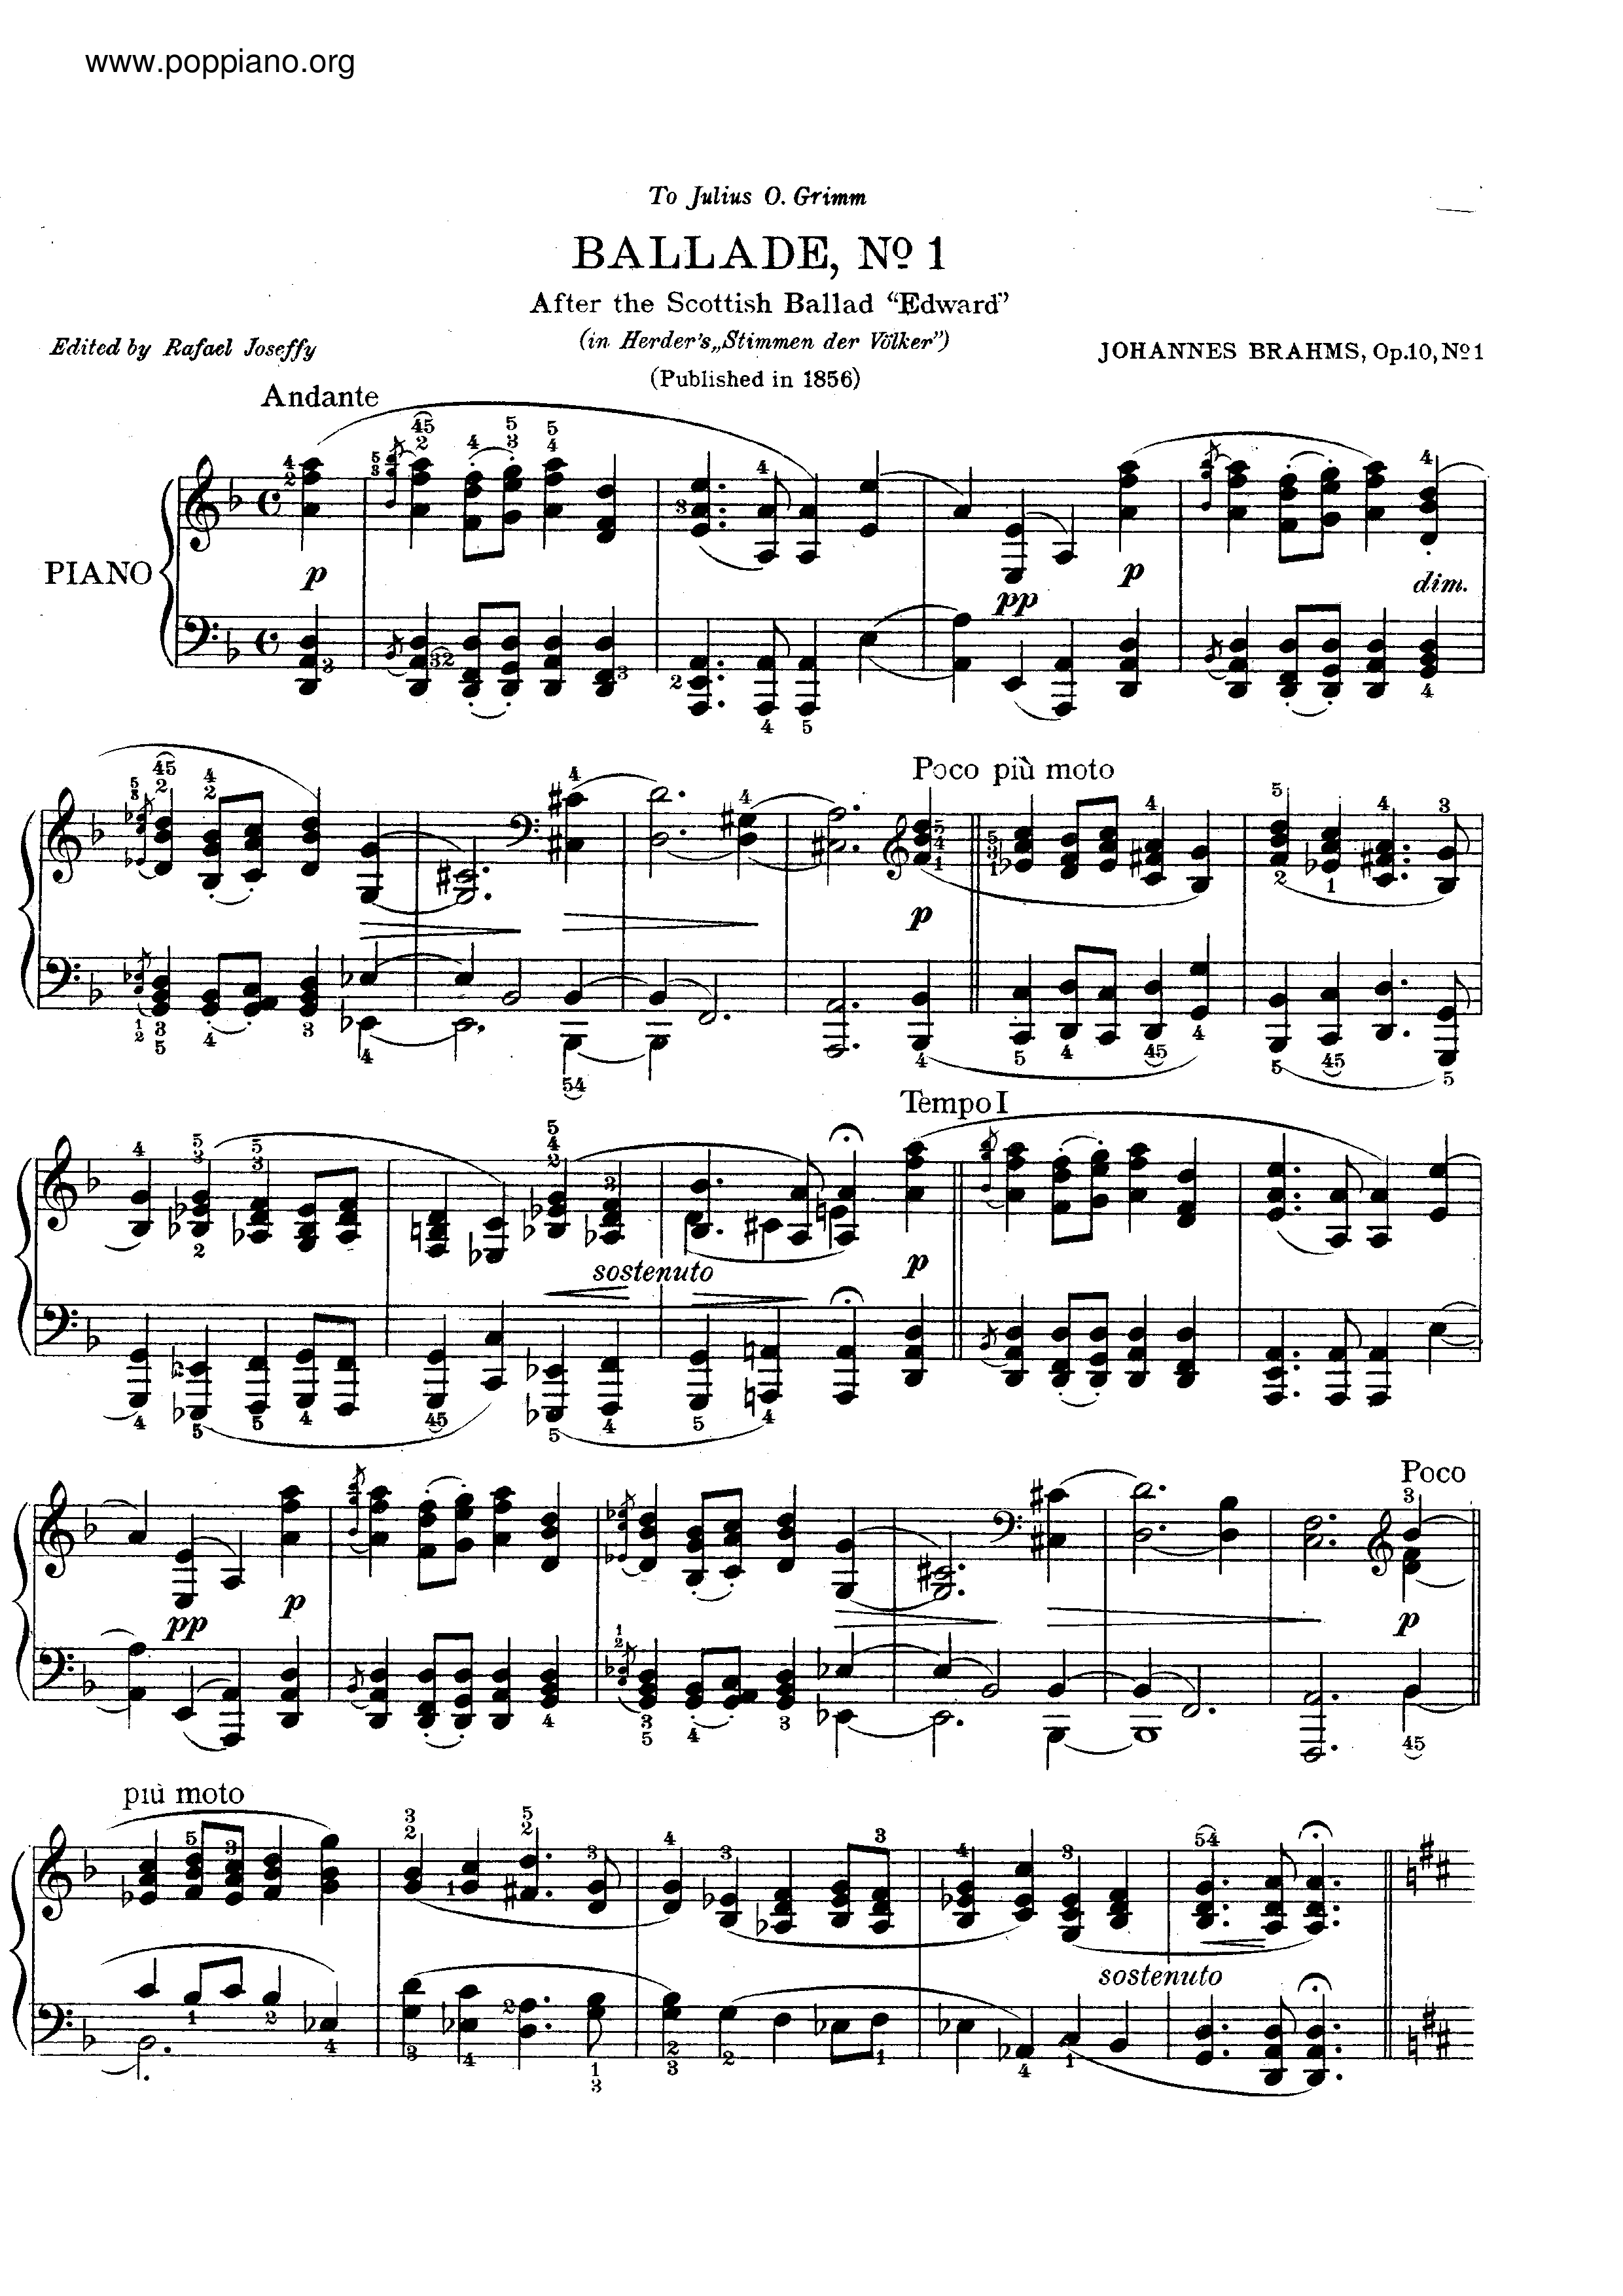 No. 1 in D minor. Andante琴谱